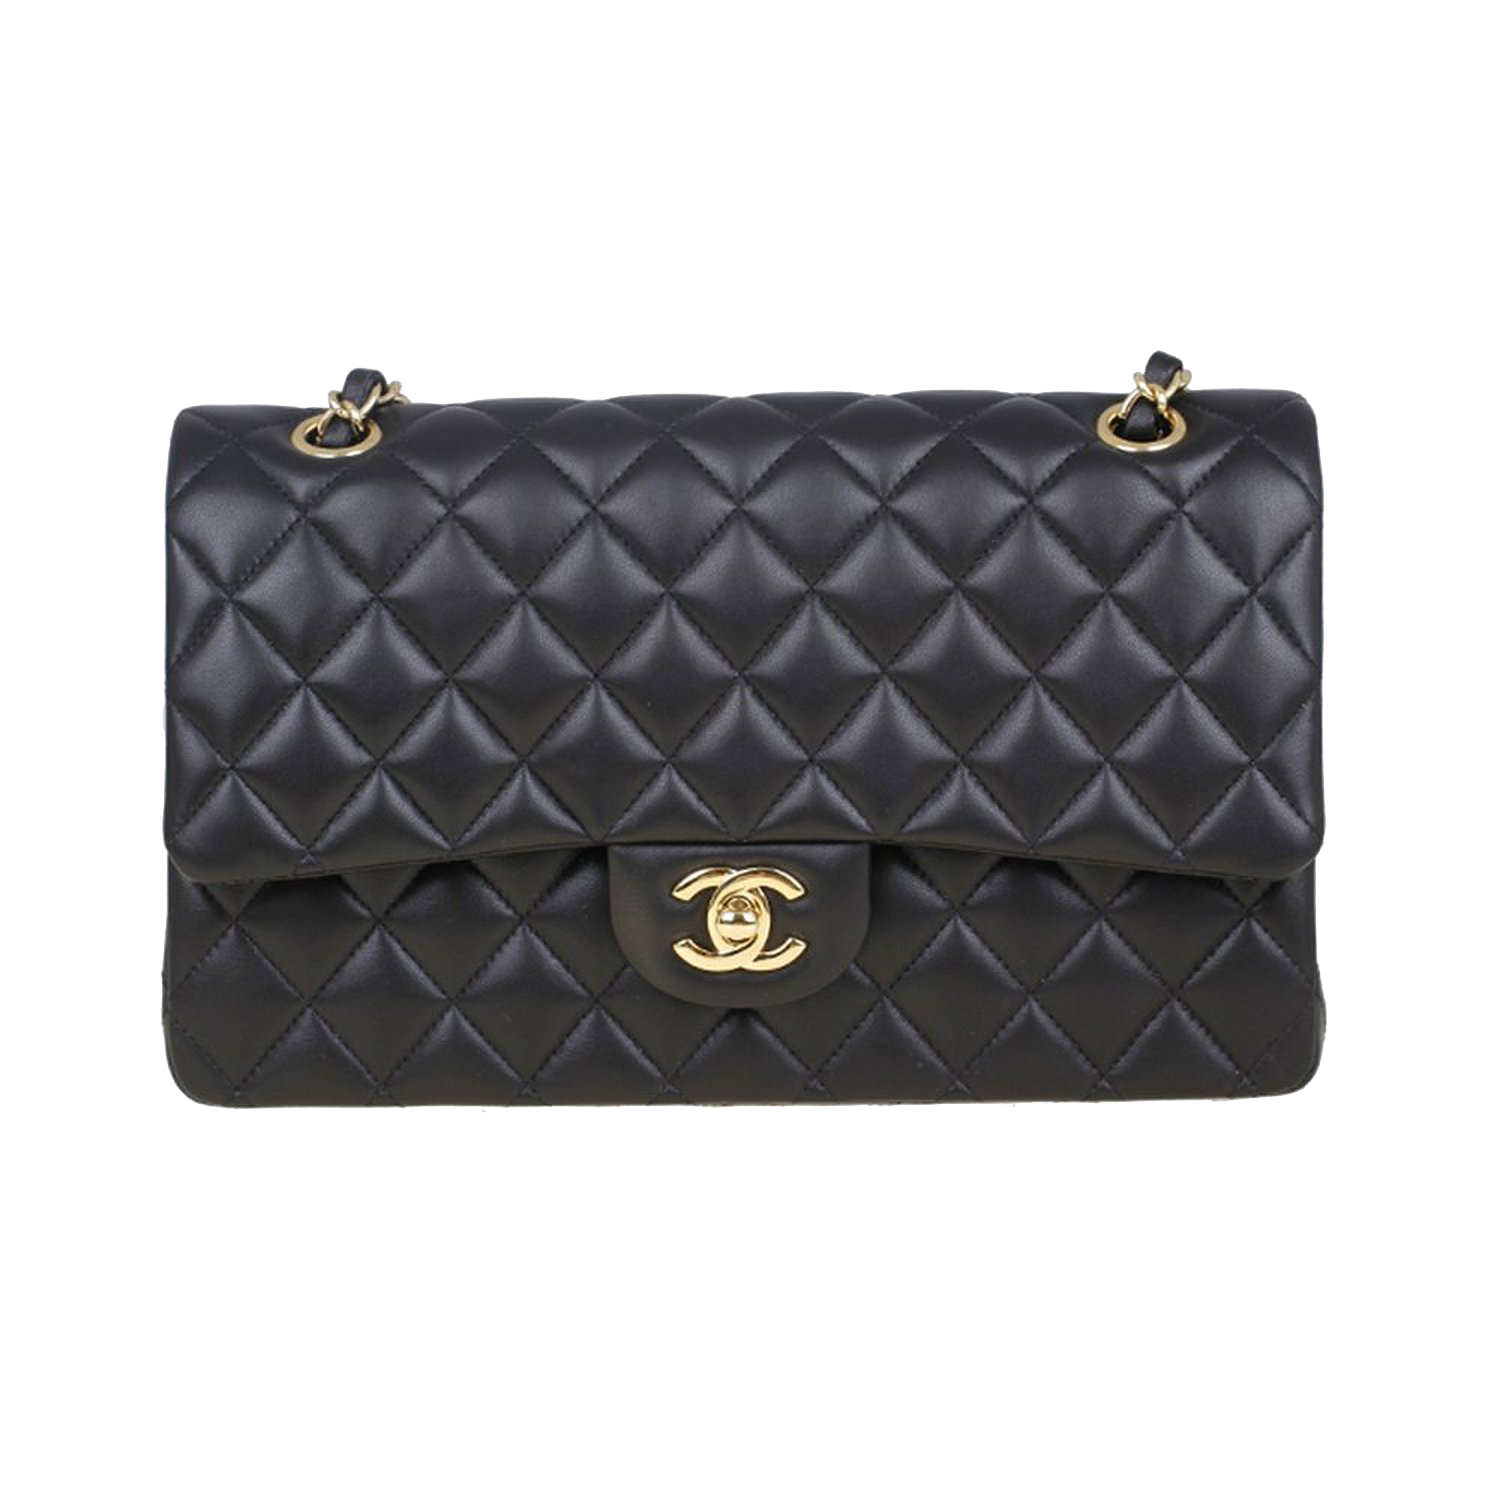 Handbag Leather Black Chanel Free Transparent Image HQ PNG Image